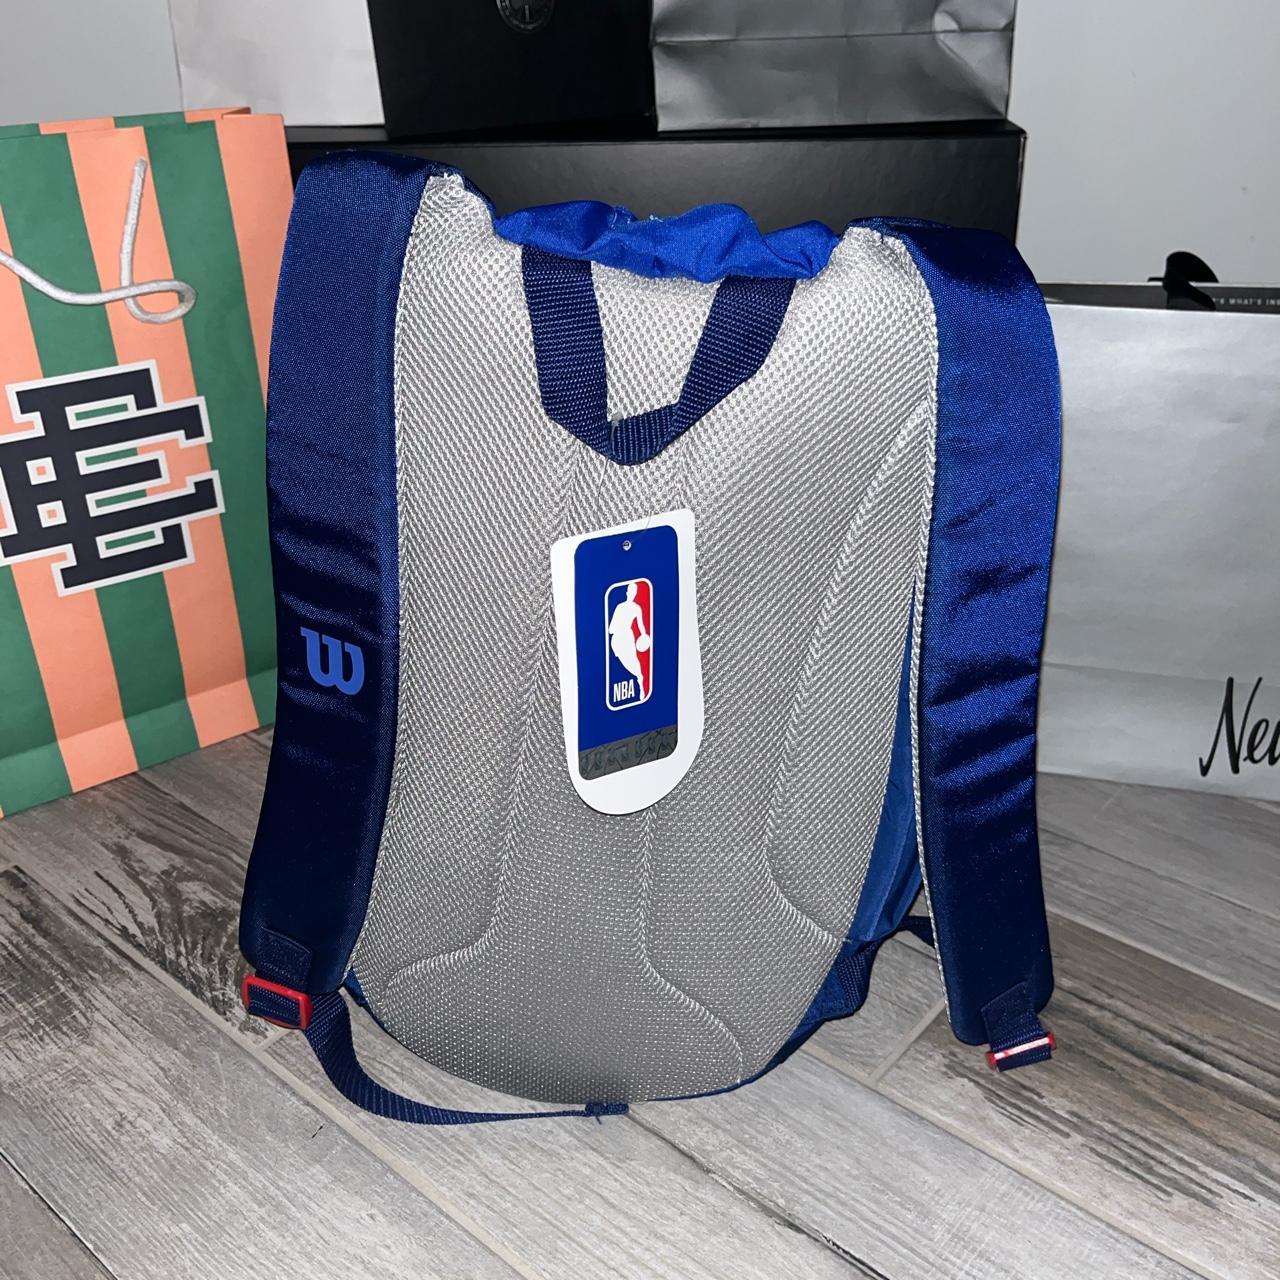 WILSON NBA DRV Basketball Backpack - Navy